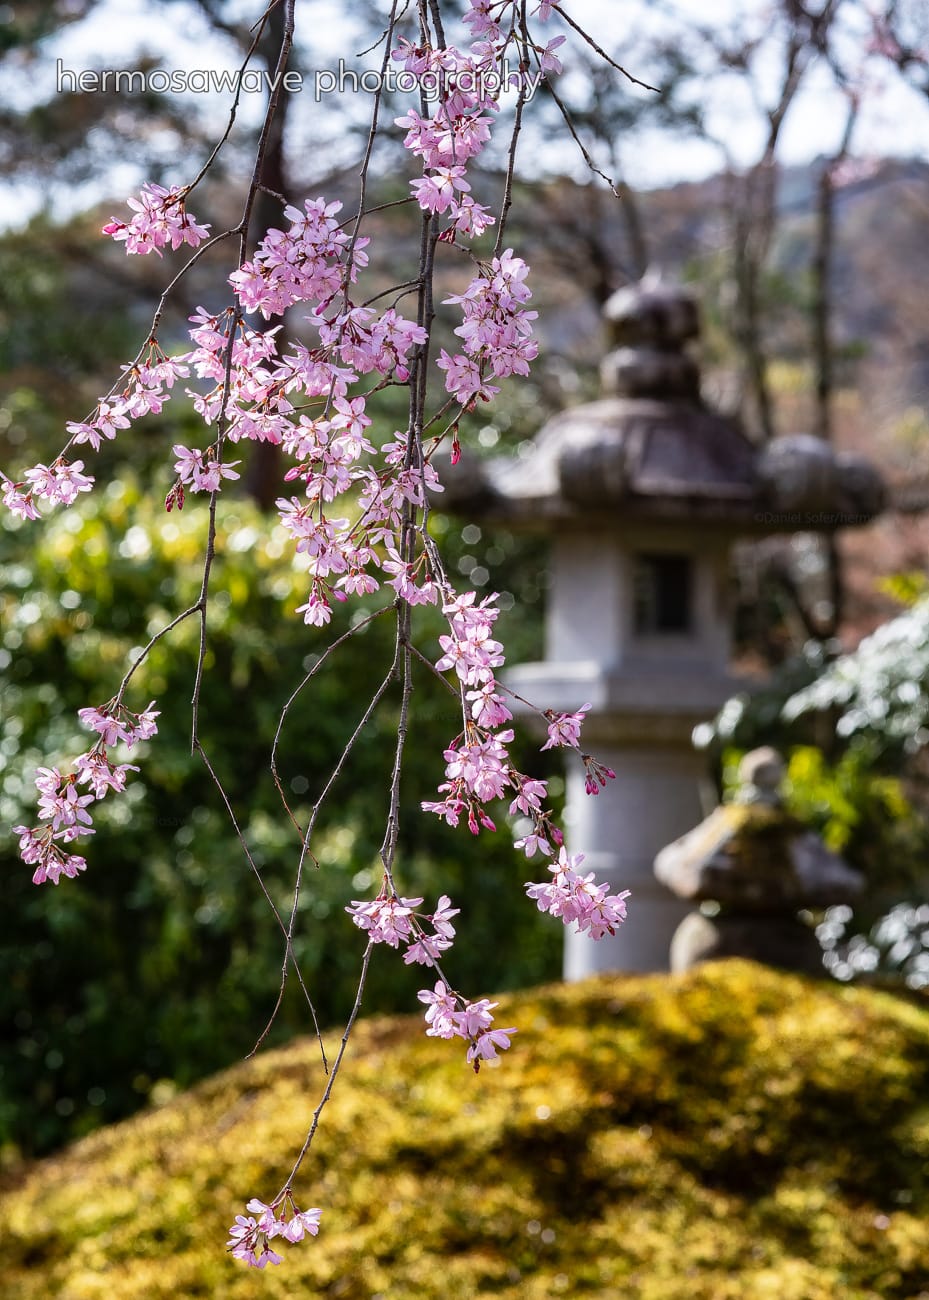 Sakura and a Photo Exhibition